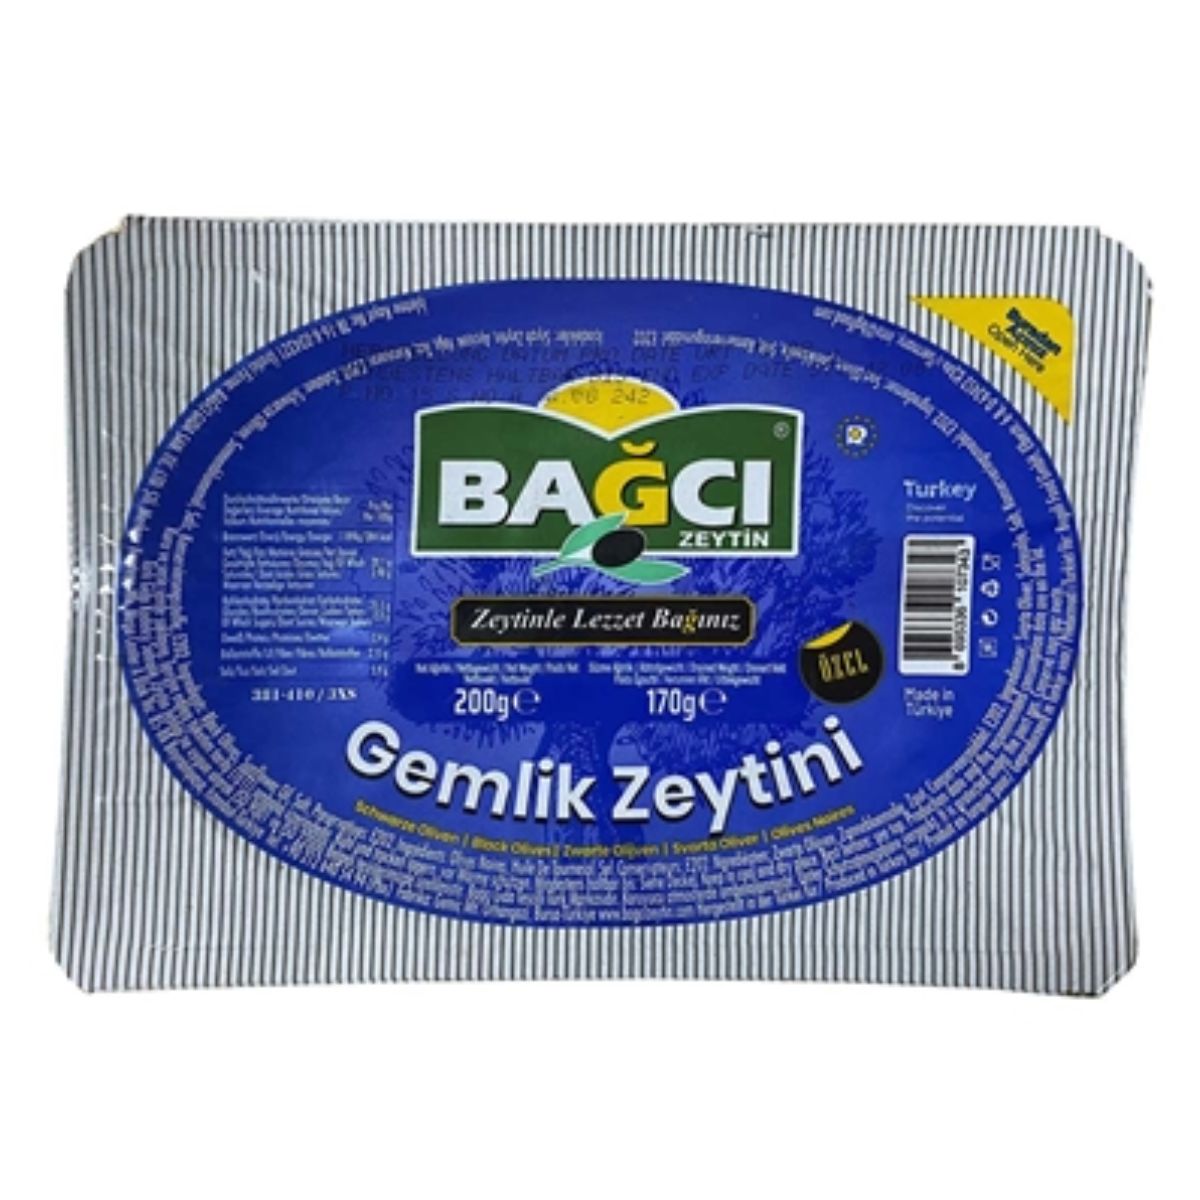 Bagci - Black Olives - 200g zeytin 500g.